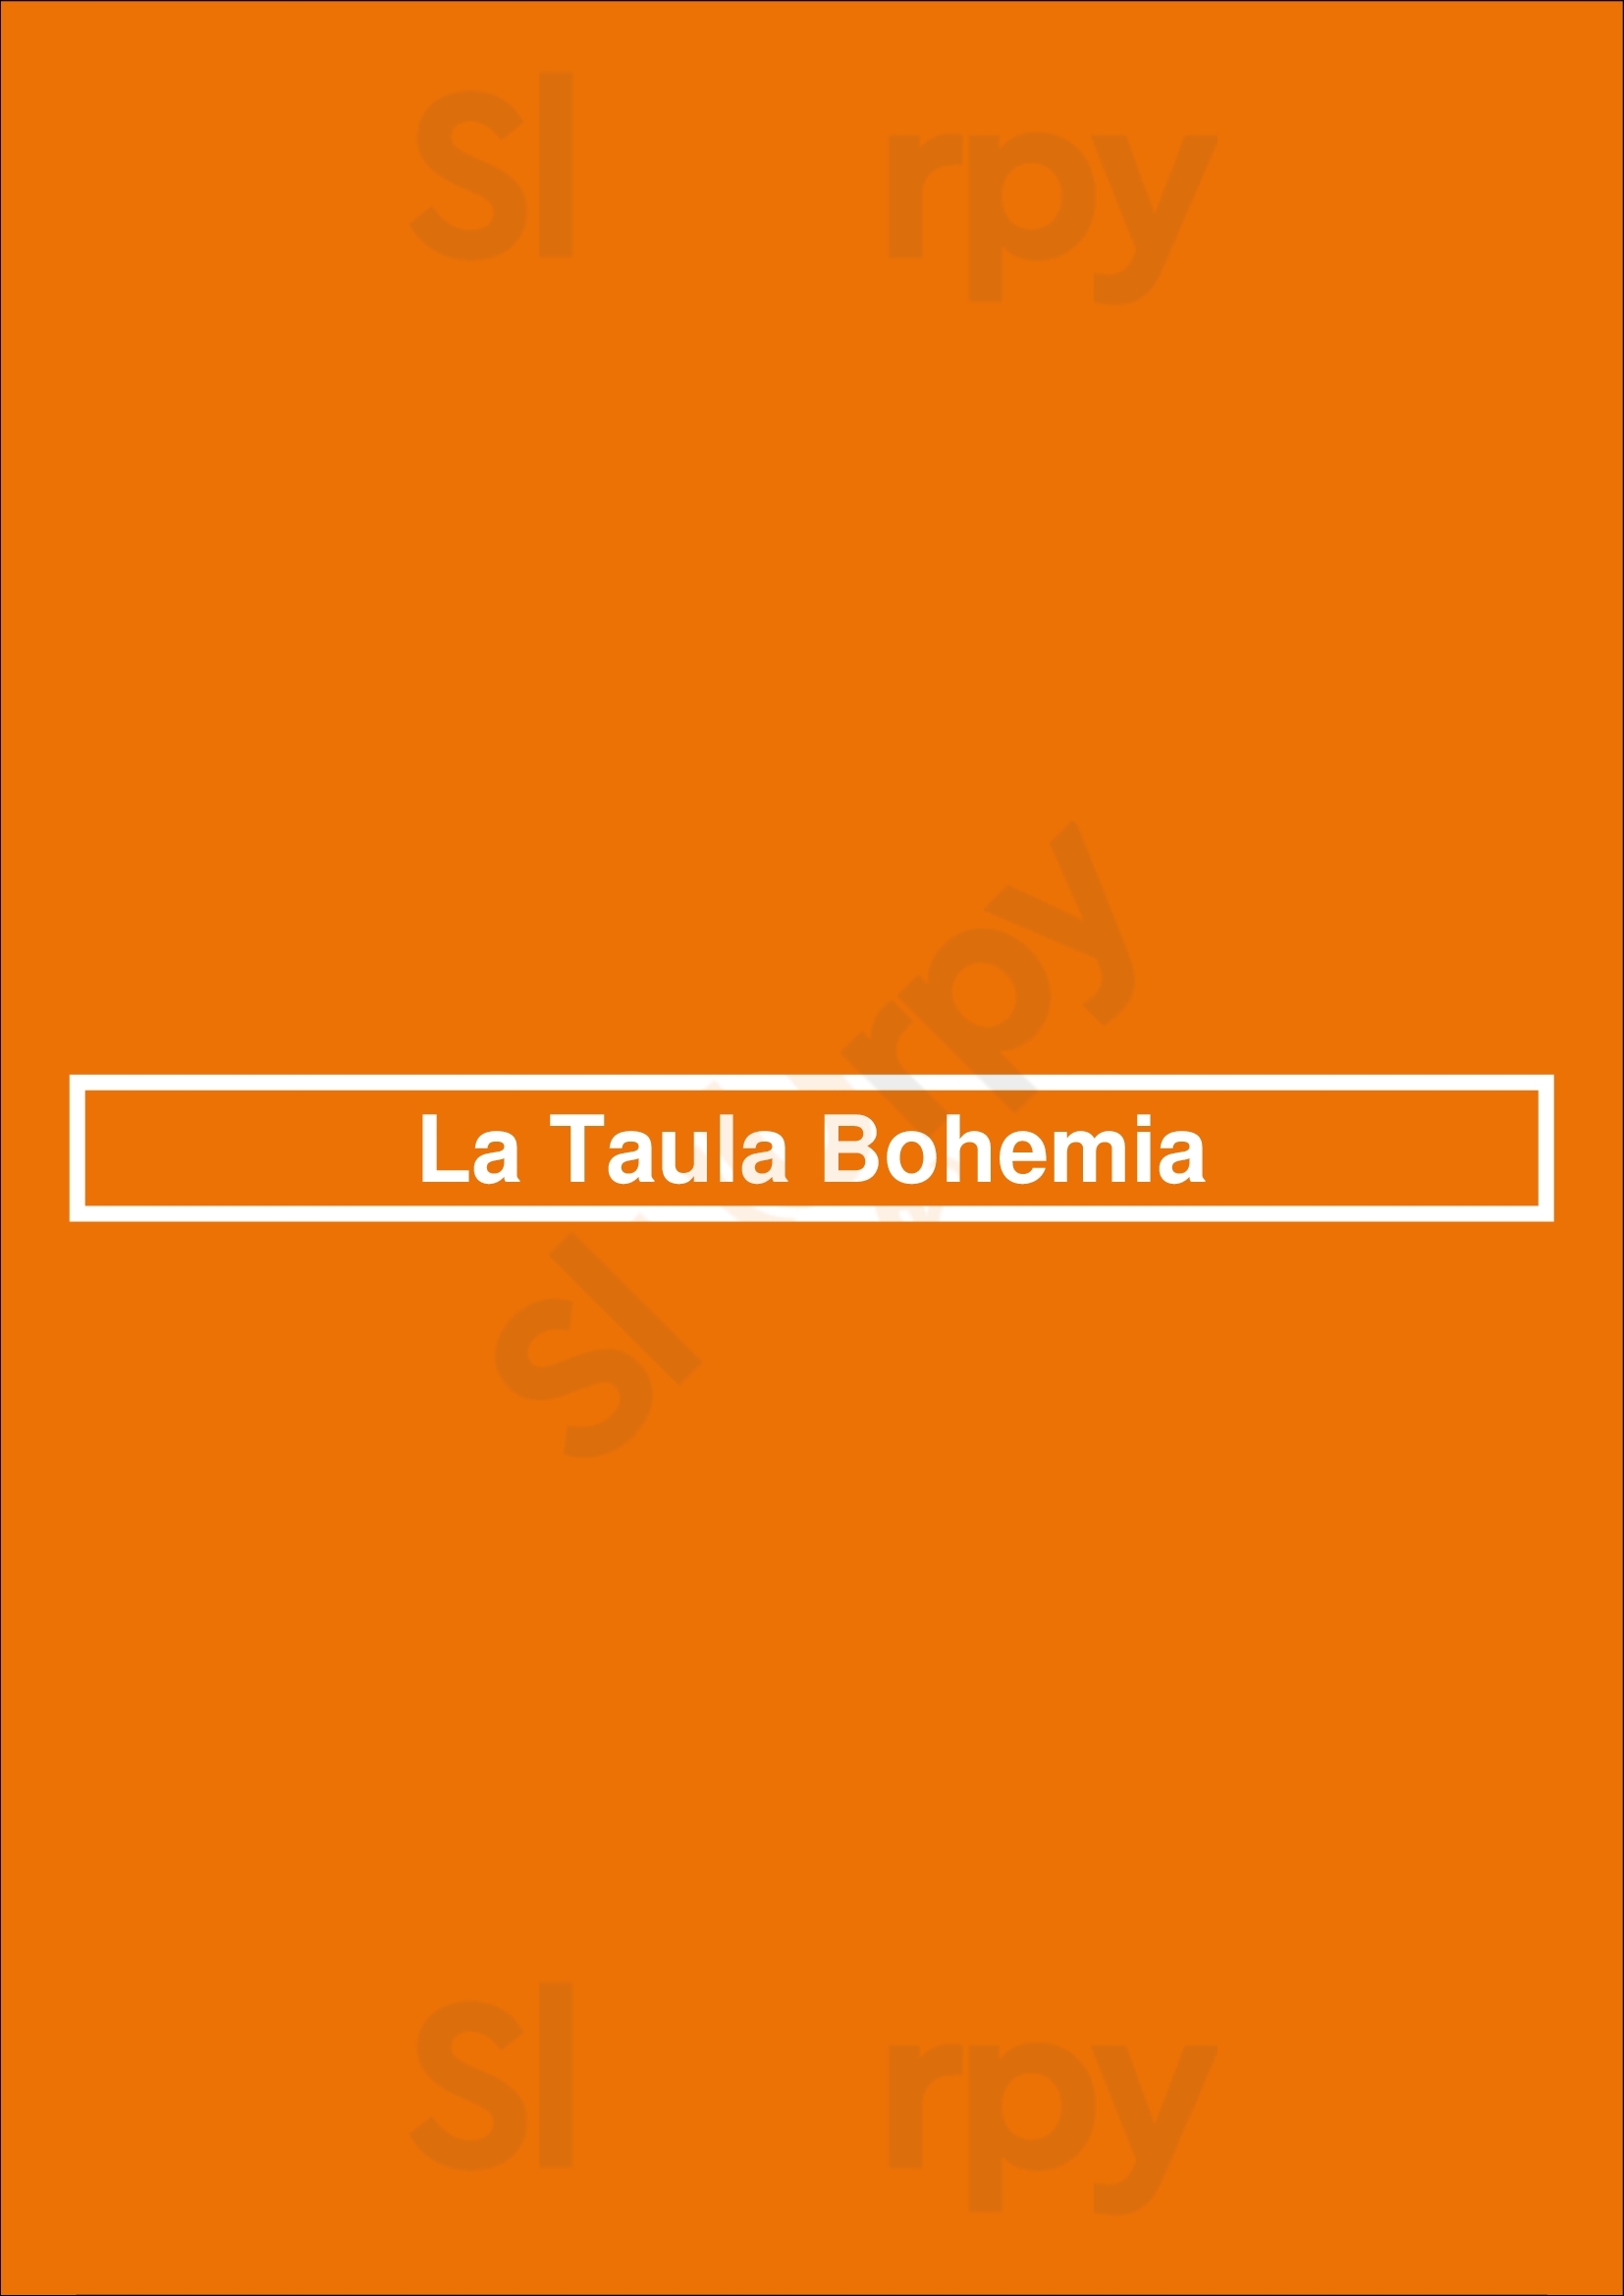 La Taula Bohemia Barcelona Menu - 1